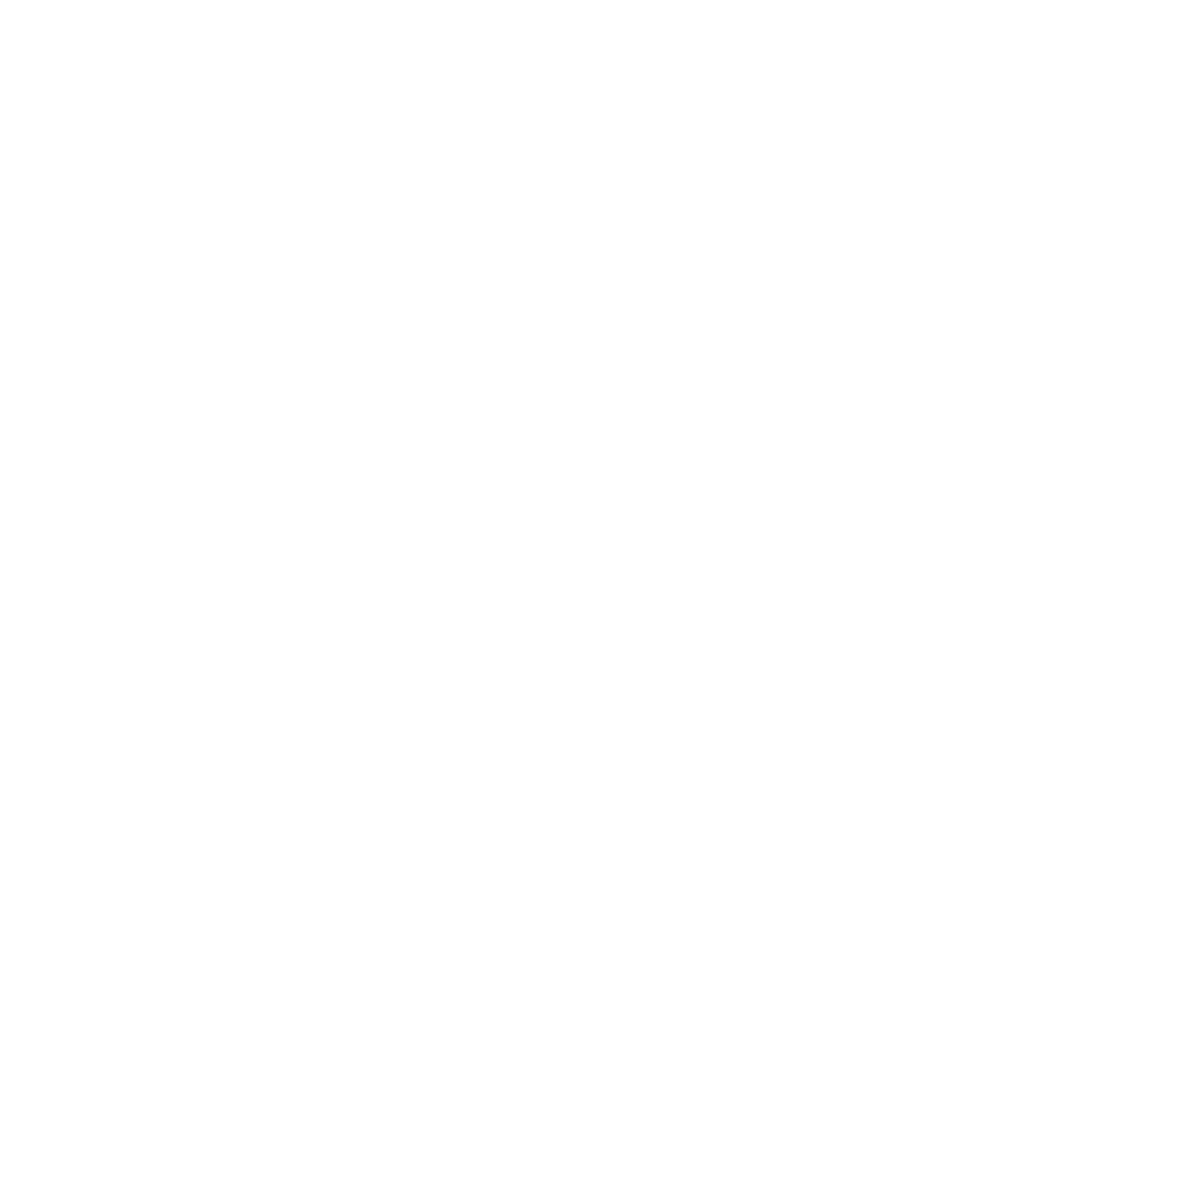 Tarzankick